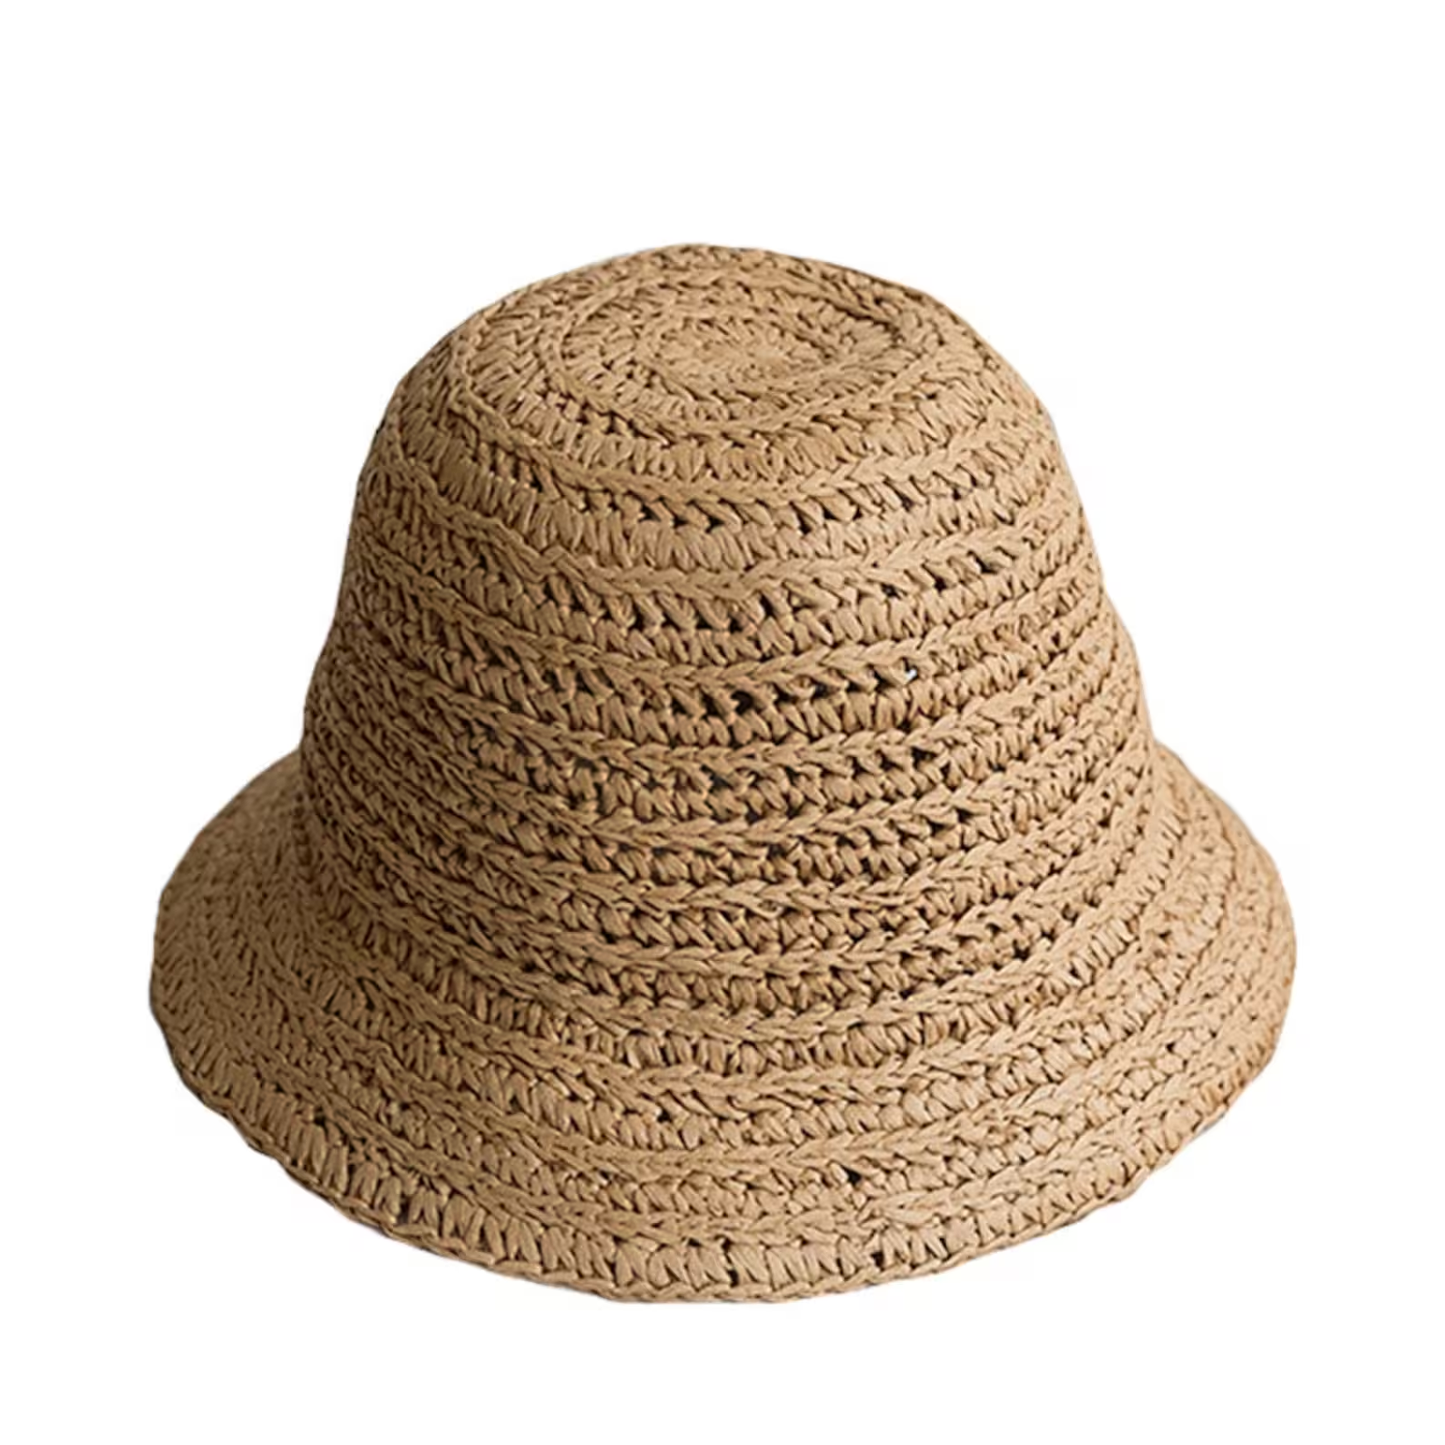 Hand-woven Fedora Sun Hat Round Top Bucket Hat of Straw Hat